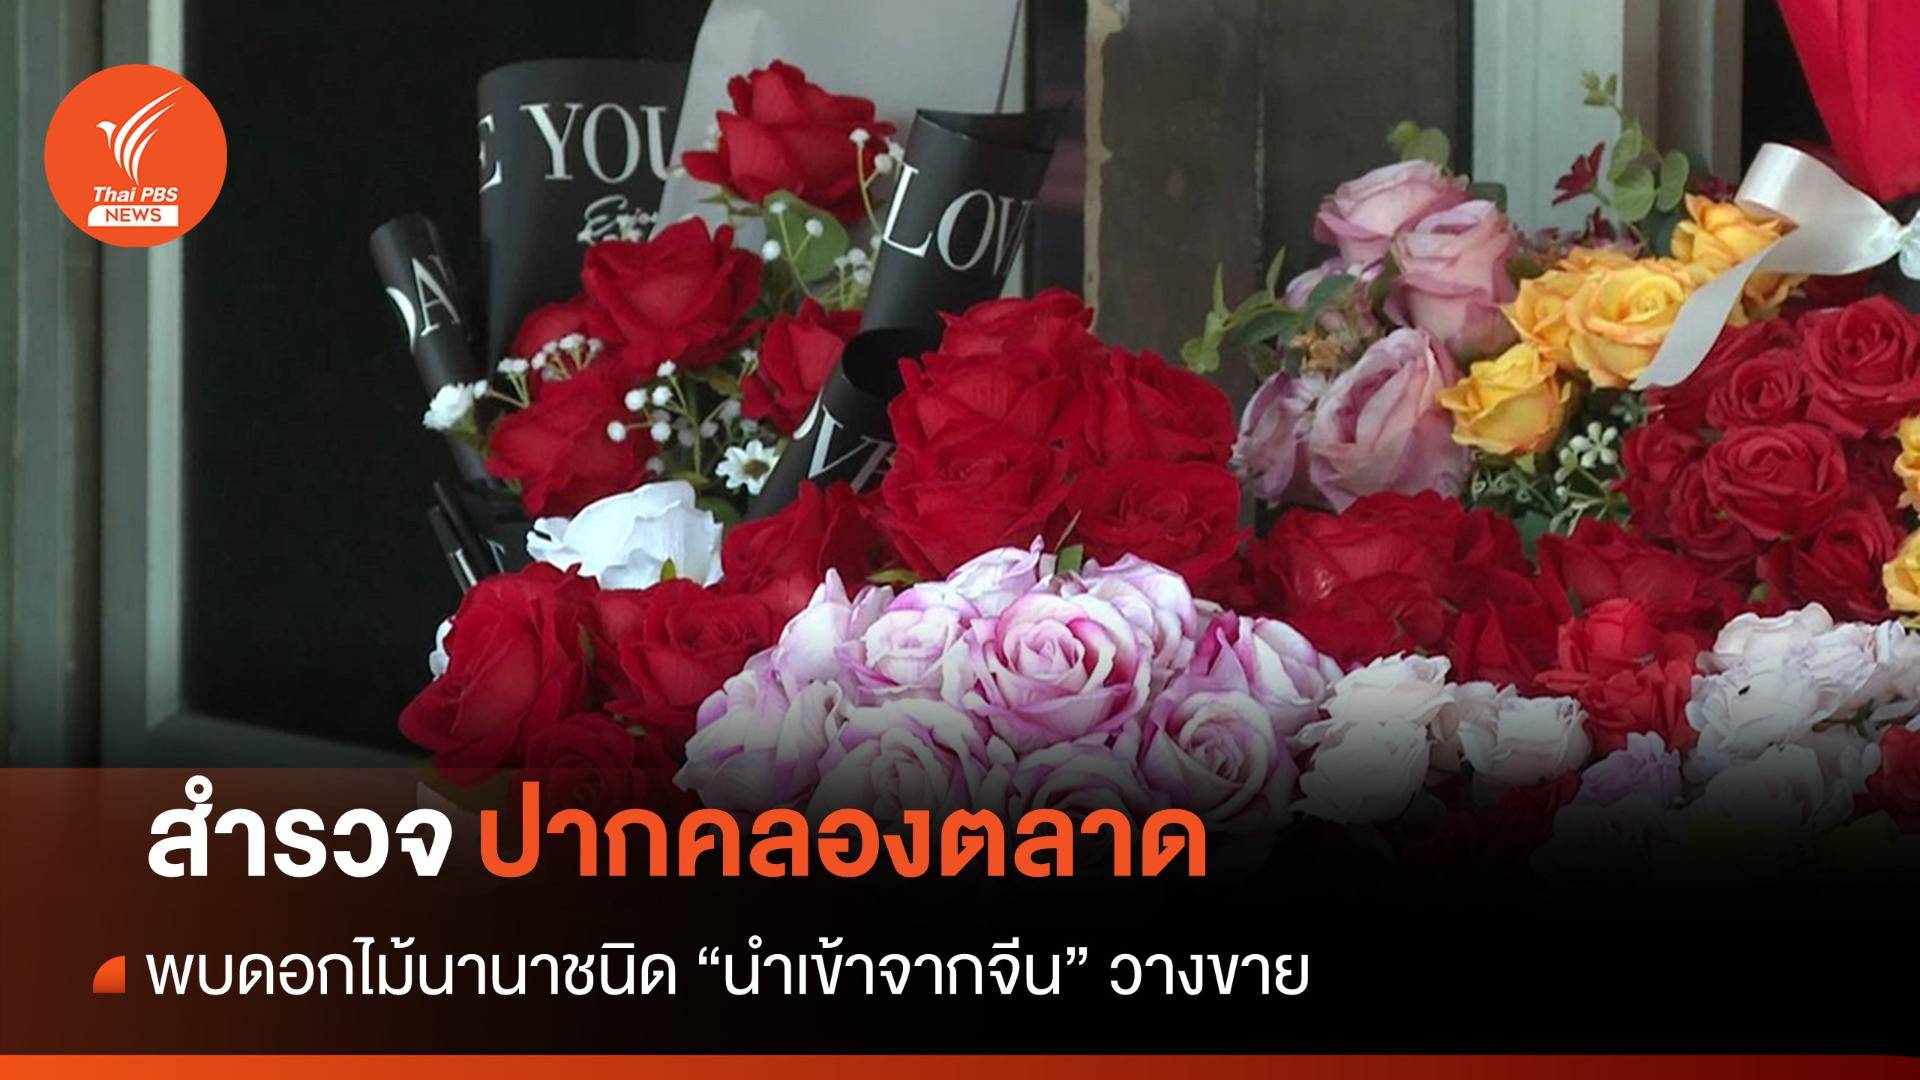 ดอกไม้จากจีนตีตลาดกระทบผู้ปลูกดอกไม้ไทย "ออเดอร์หาย-ราคาตก"